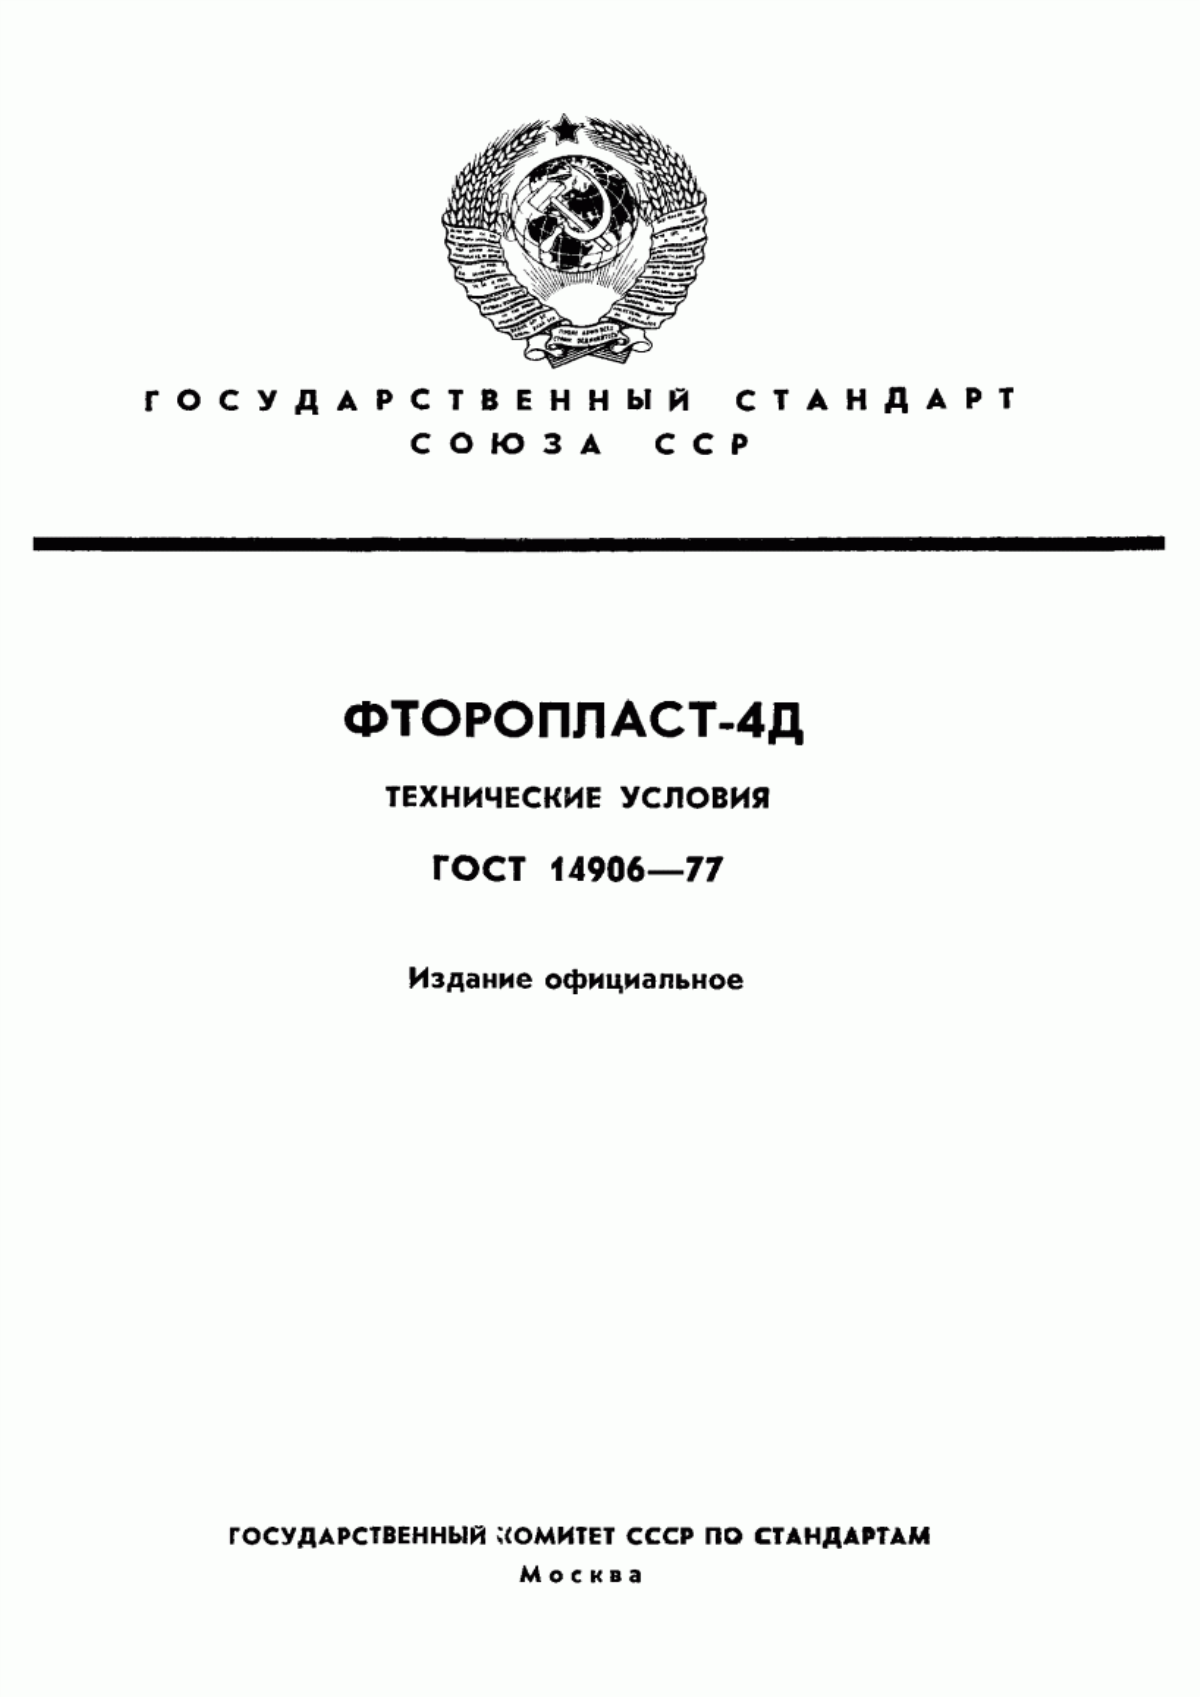 ГОСТ 14906-77 Фторопласт-4Д. Технические условия